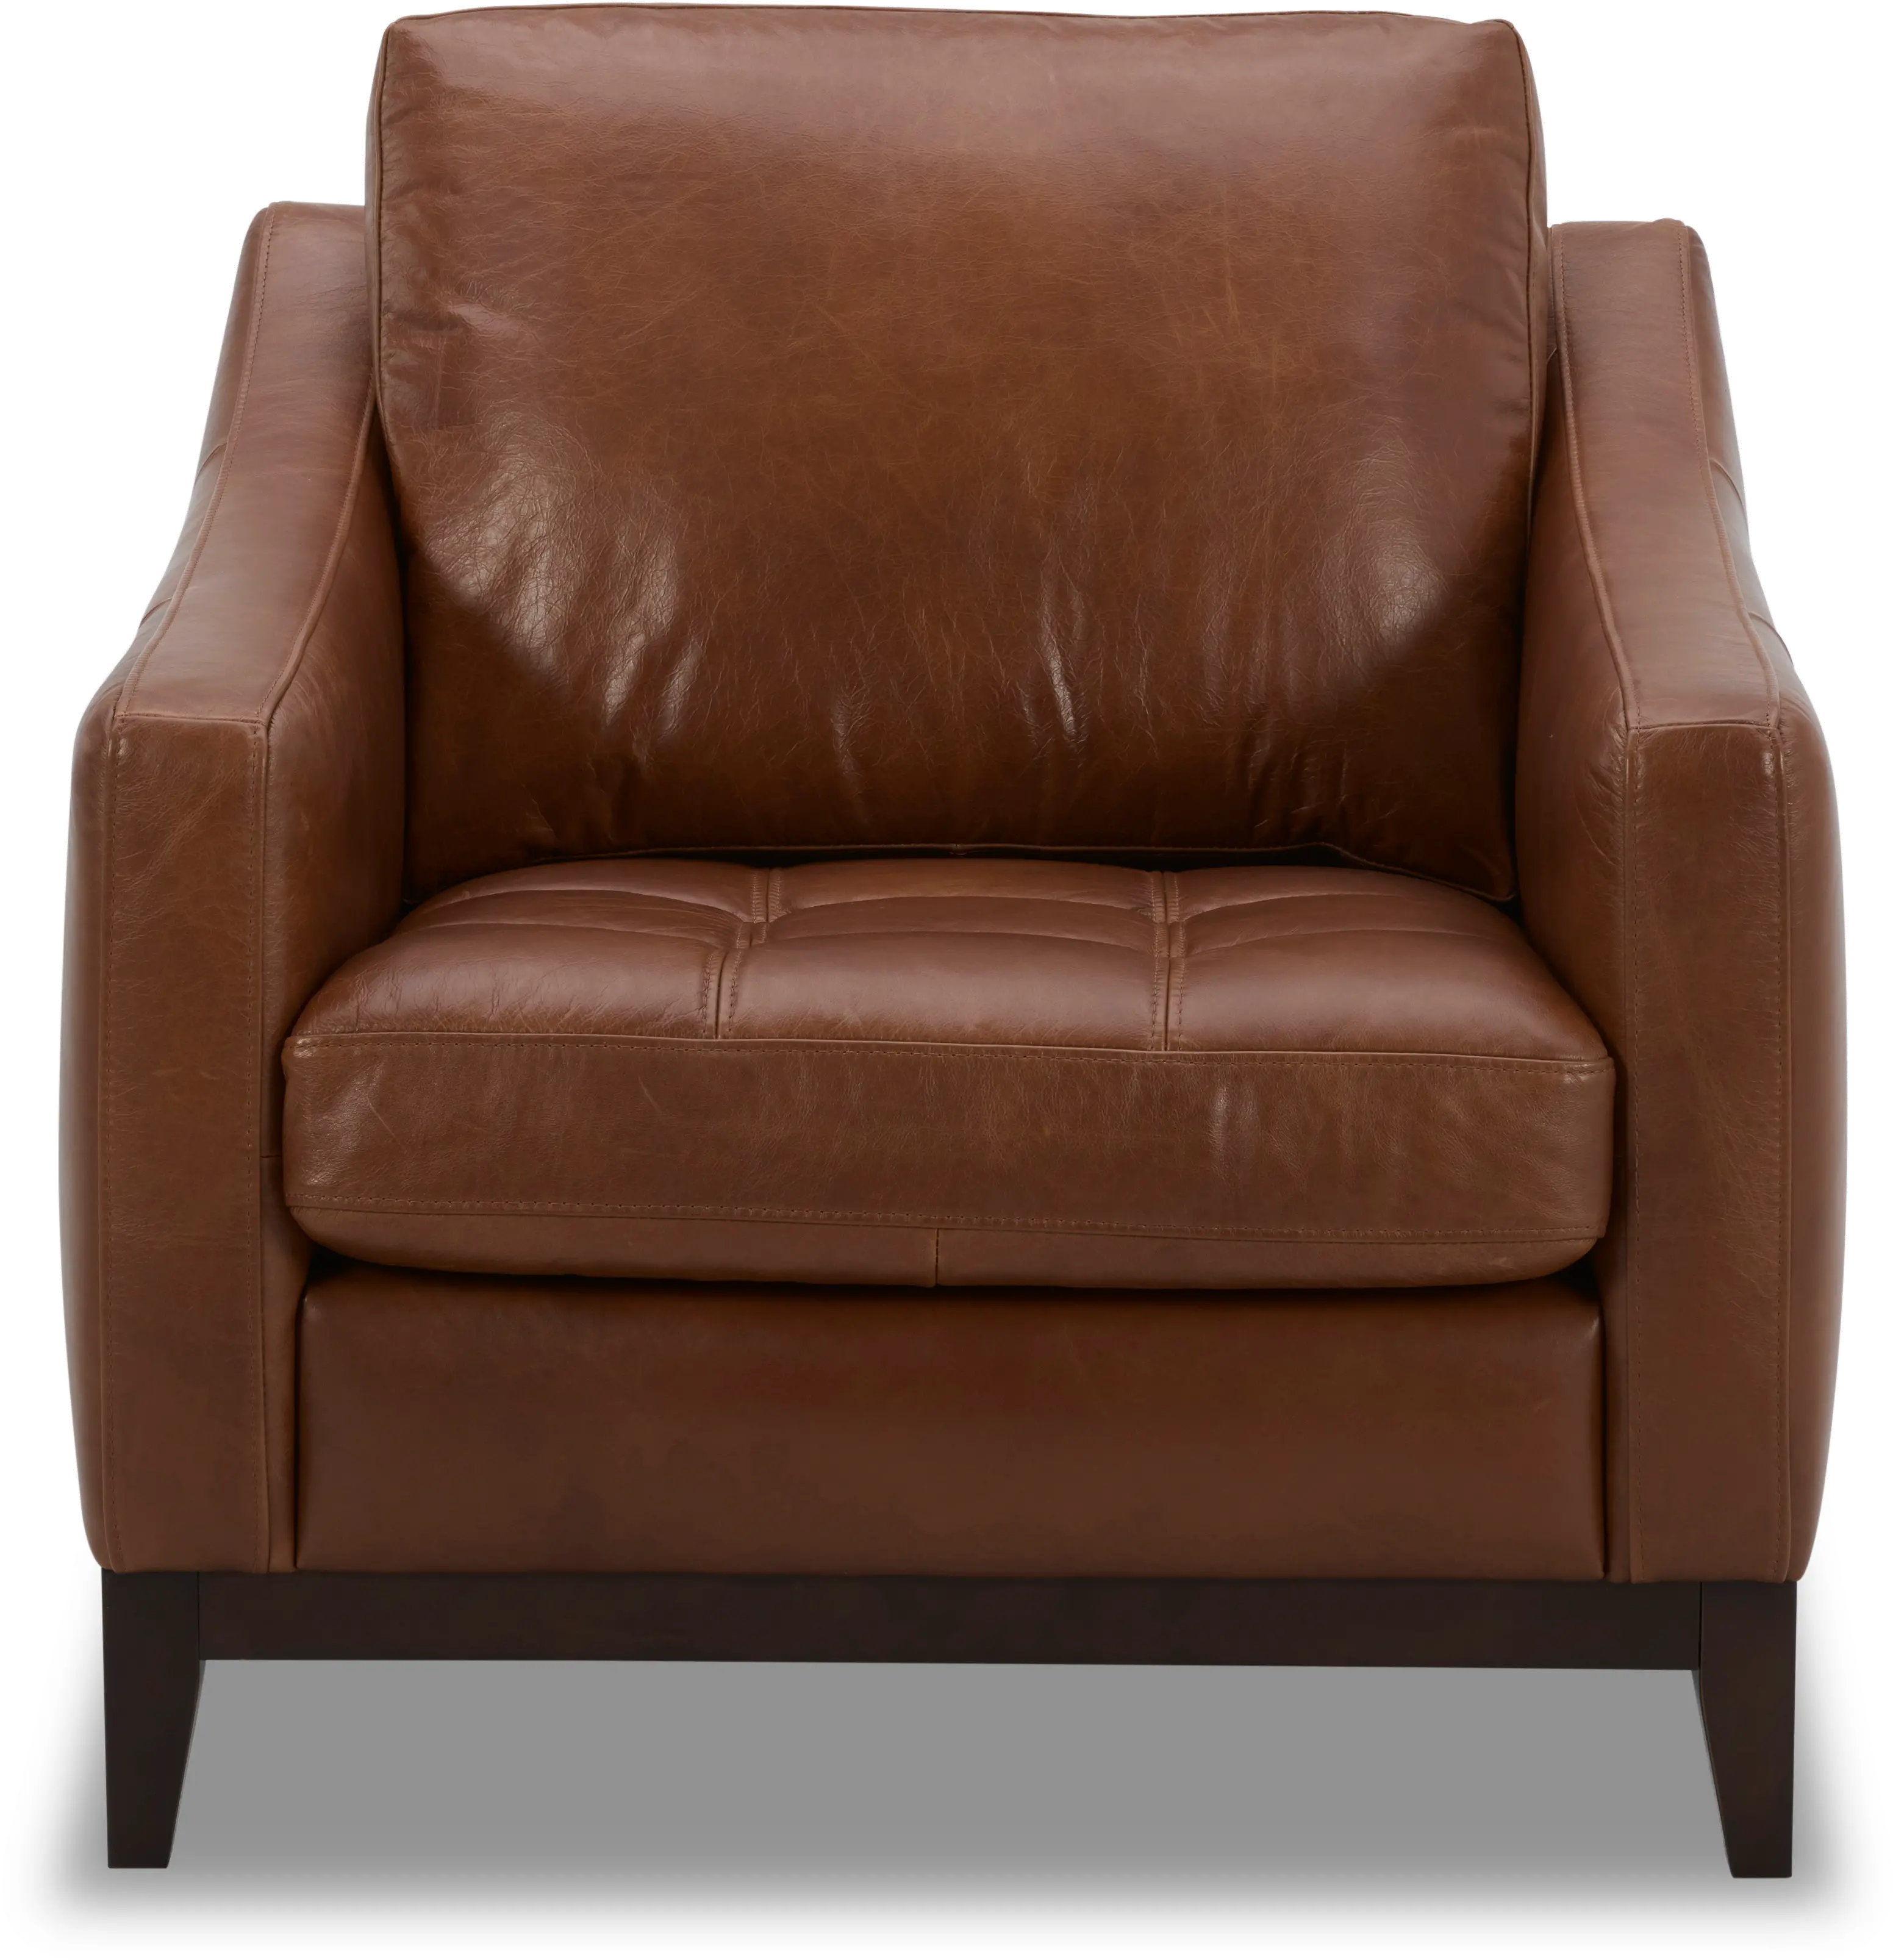 De la Cruz Brown Leather Chair